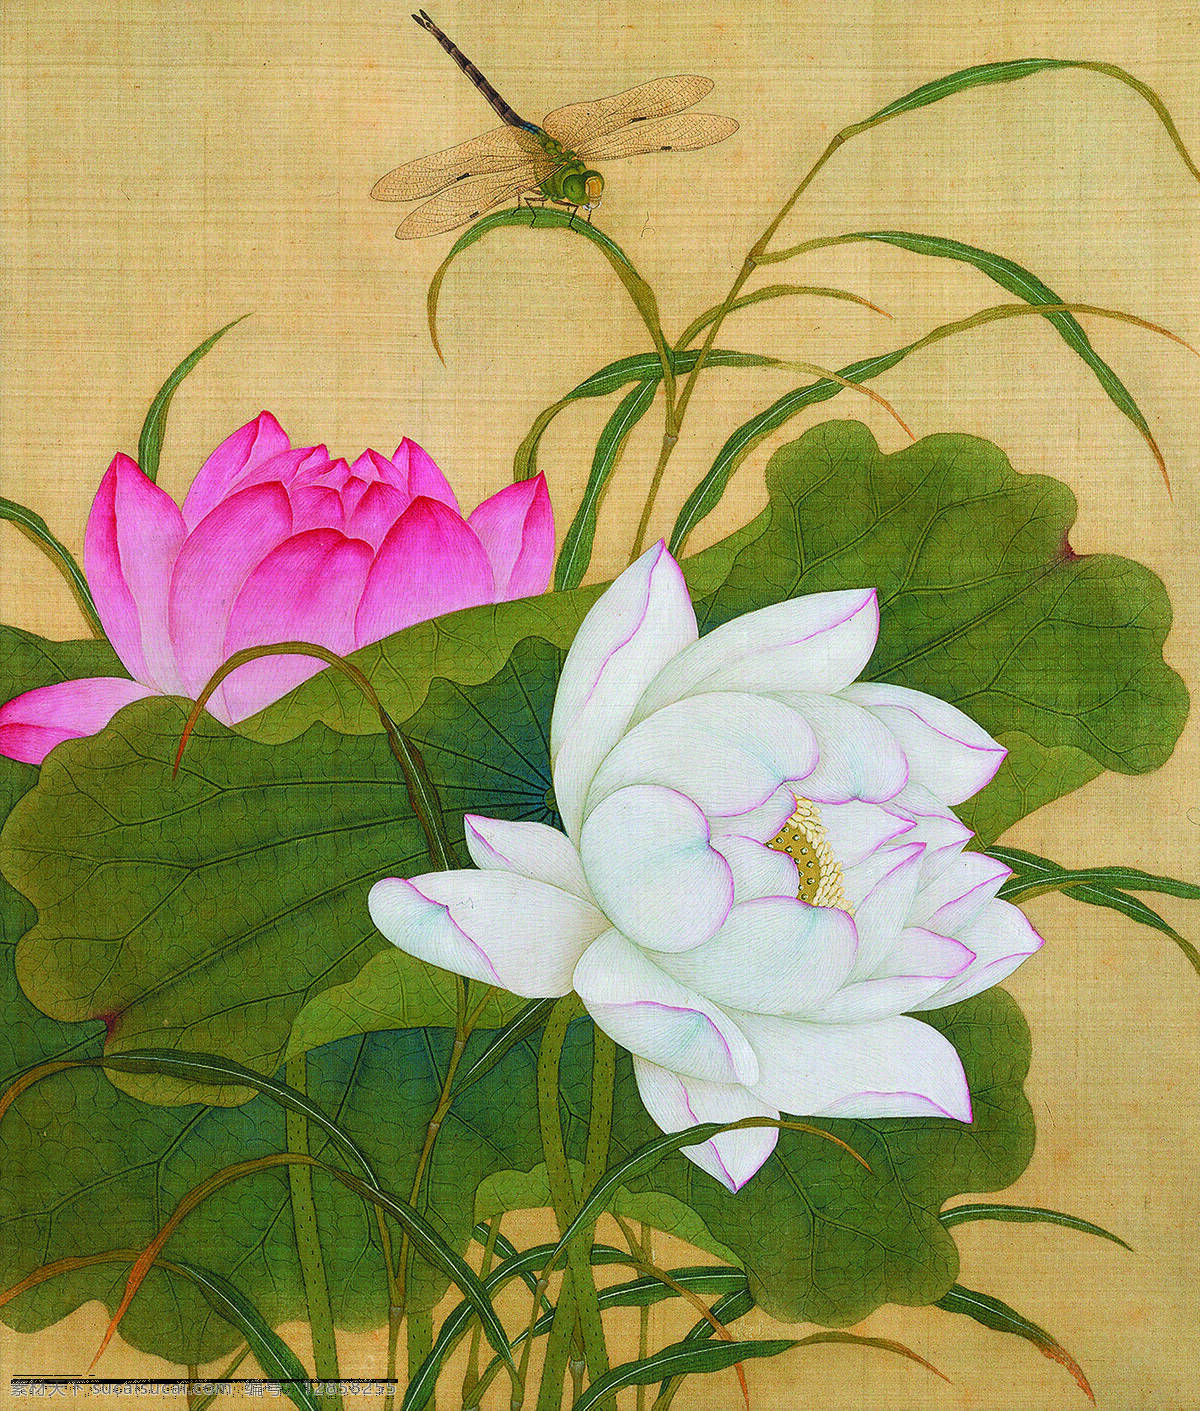 荷花蜻蜓图 美术 中国画 工笔画 荷花 蜻蜓 国画荷花 文化艺术 绘画书法